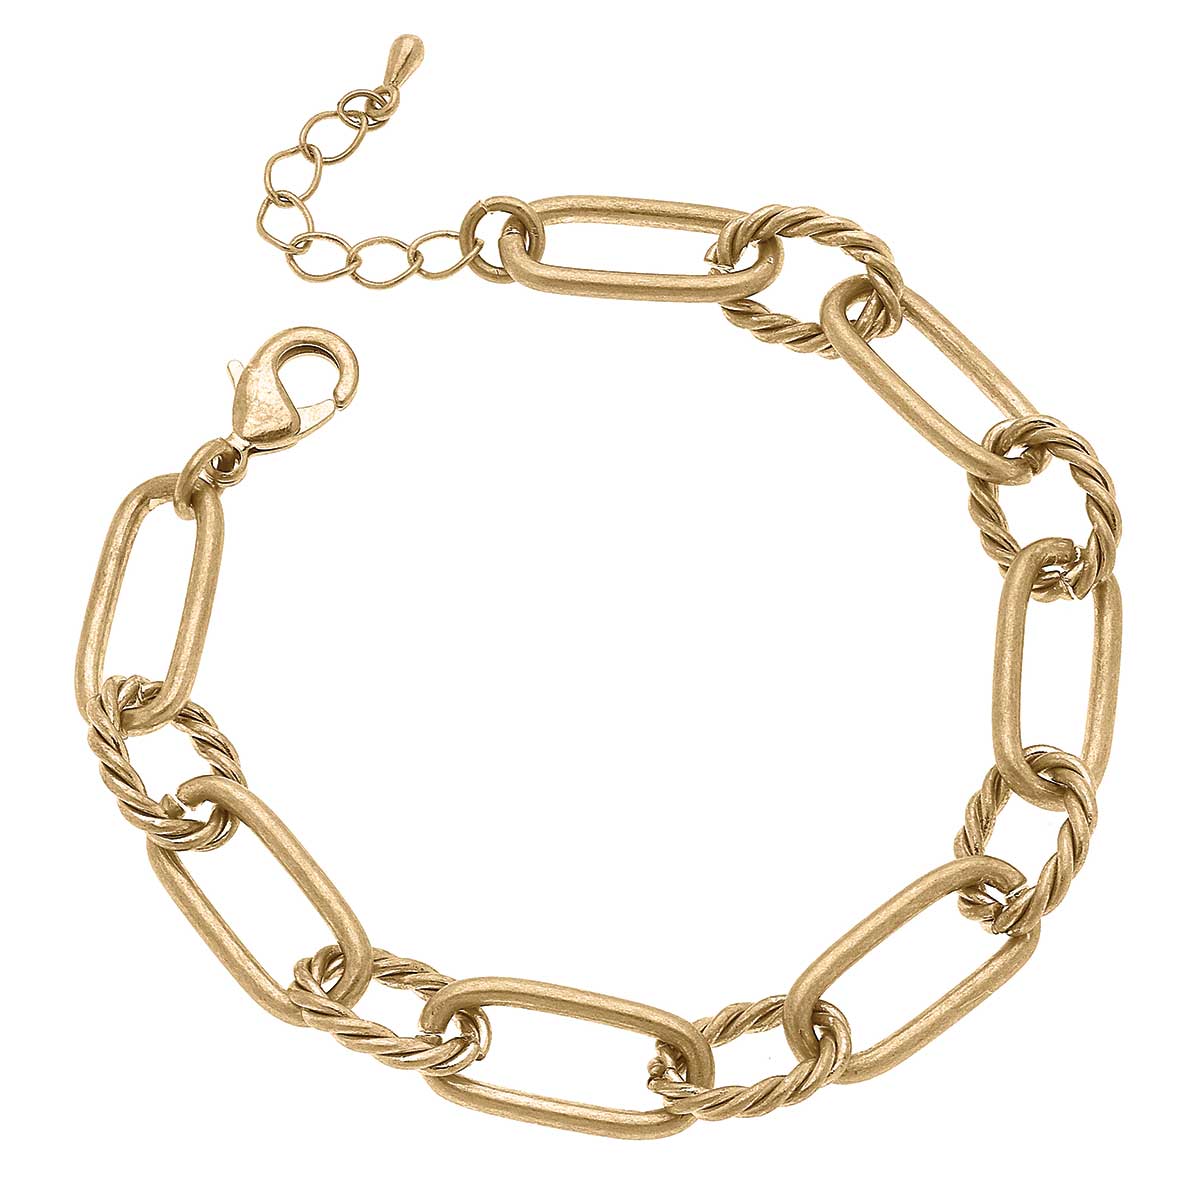 Lennon Twisted Metal Chain Link Bracelet in Worn Gold